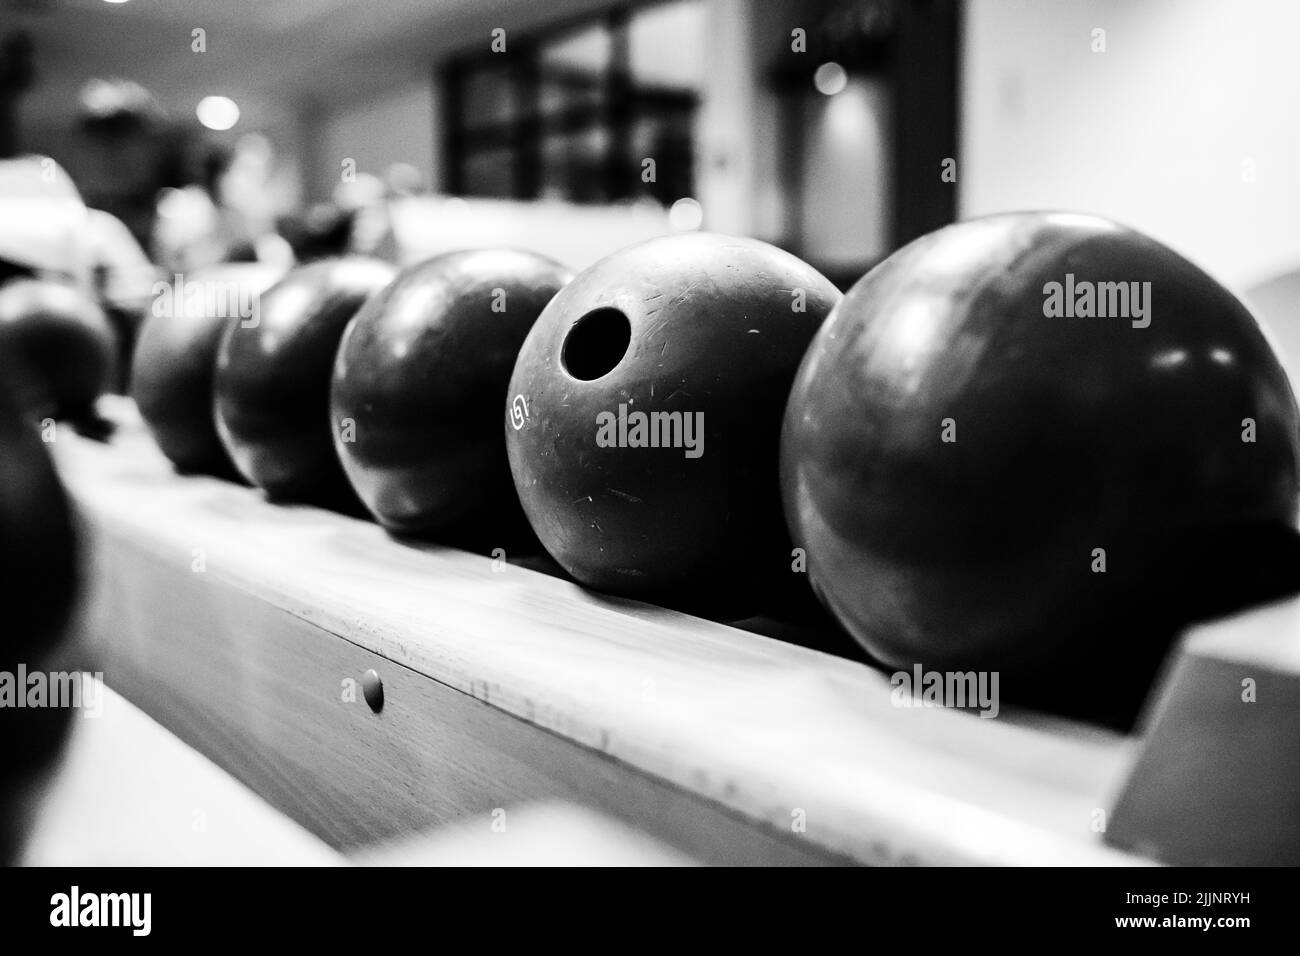 Un gros plan en niveaux de gris de boules de bowling sur l'aire de jeux Banque D'Images